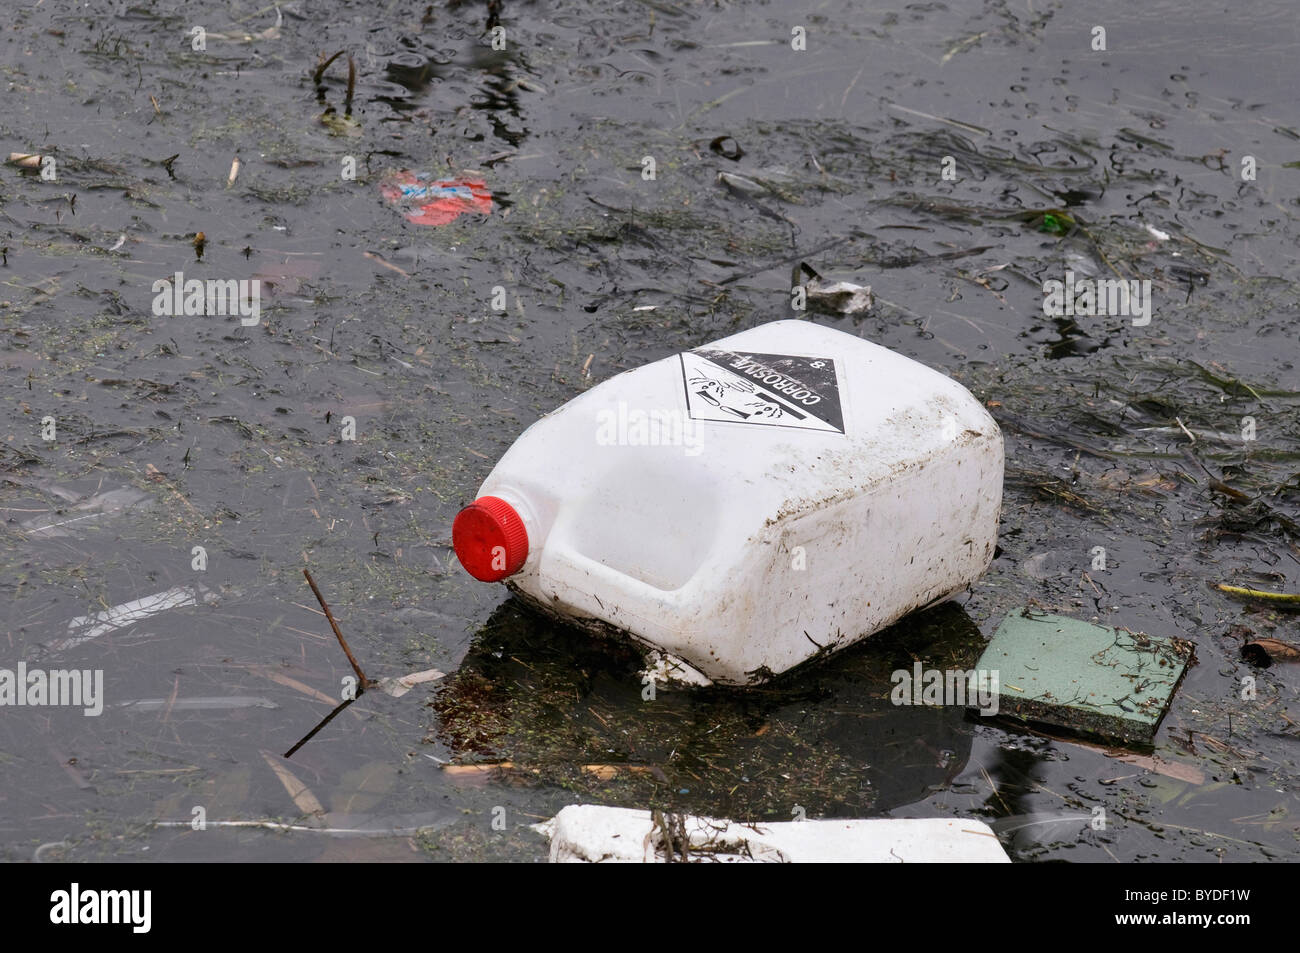 Schmutziges Wasser, alten Kanister mit ätzenden Substanzen schwimmend auf schmutzigen film Stockfoto